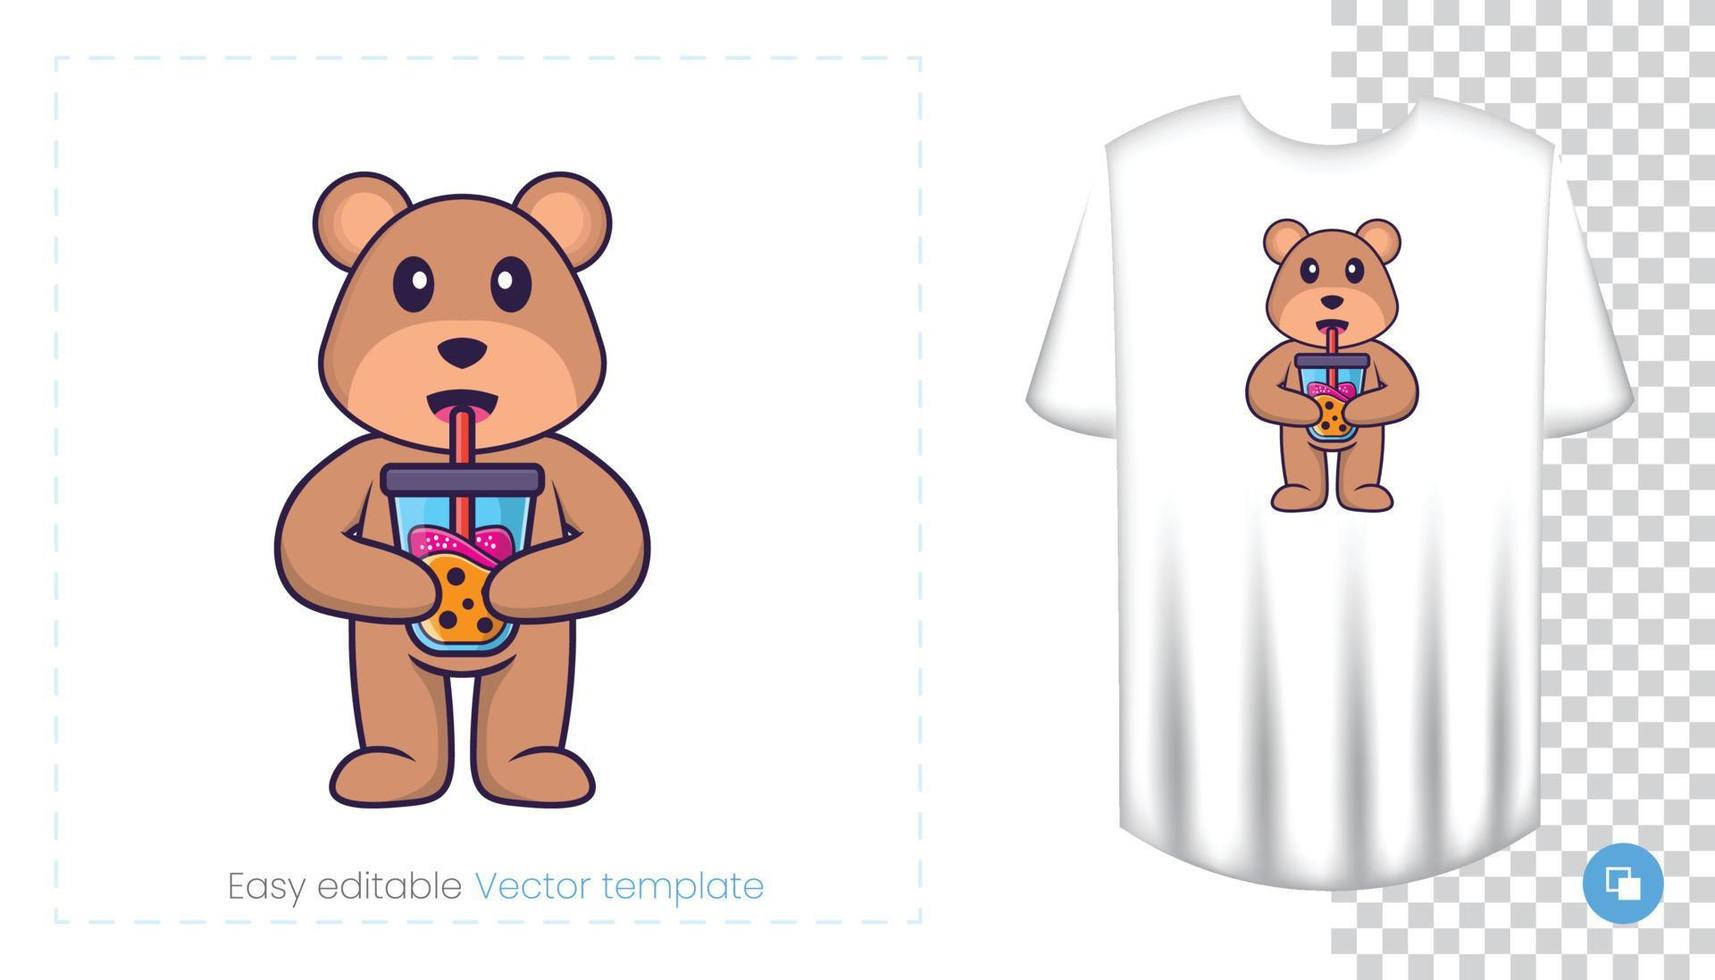 personagem do mascote do urso bonito. pode ser usado para adesivos, padrões, patches, têxteis, papel. ilustração vetorial vetor